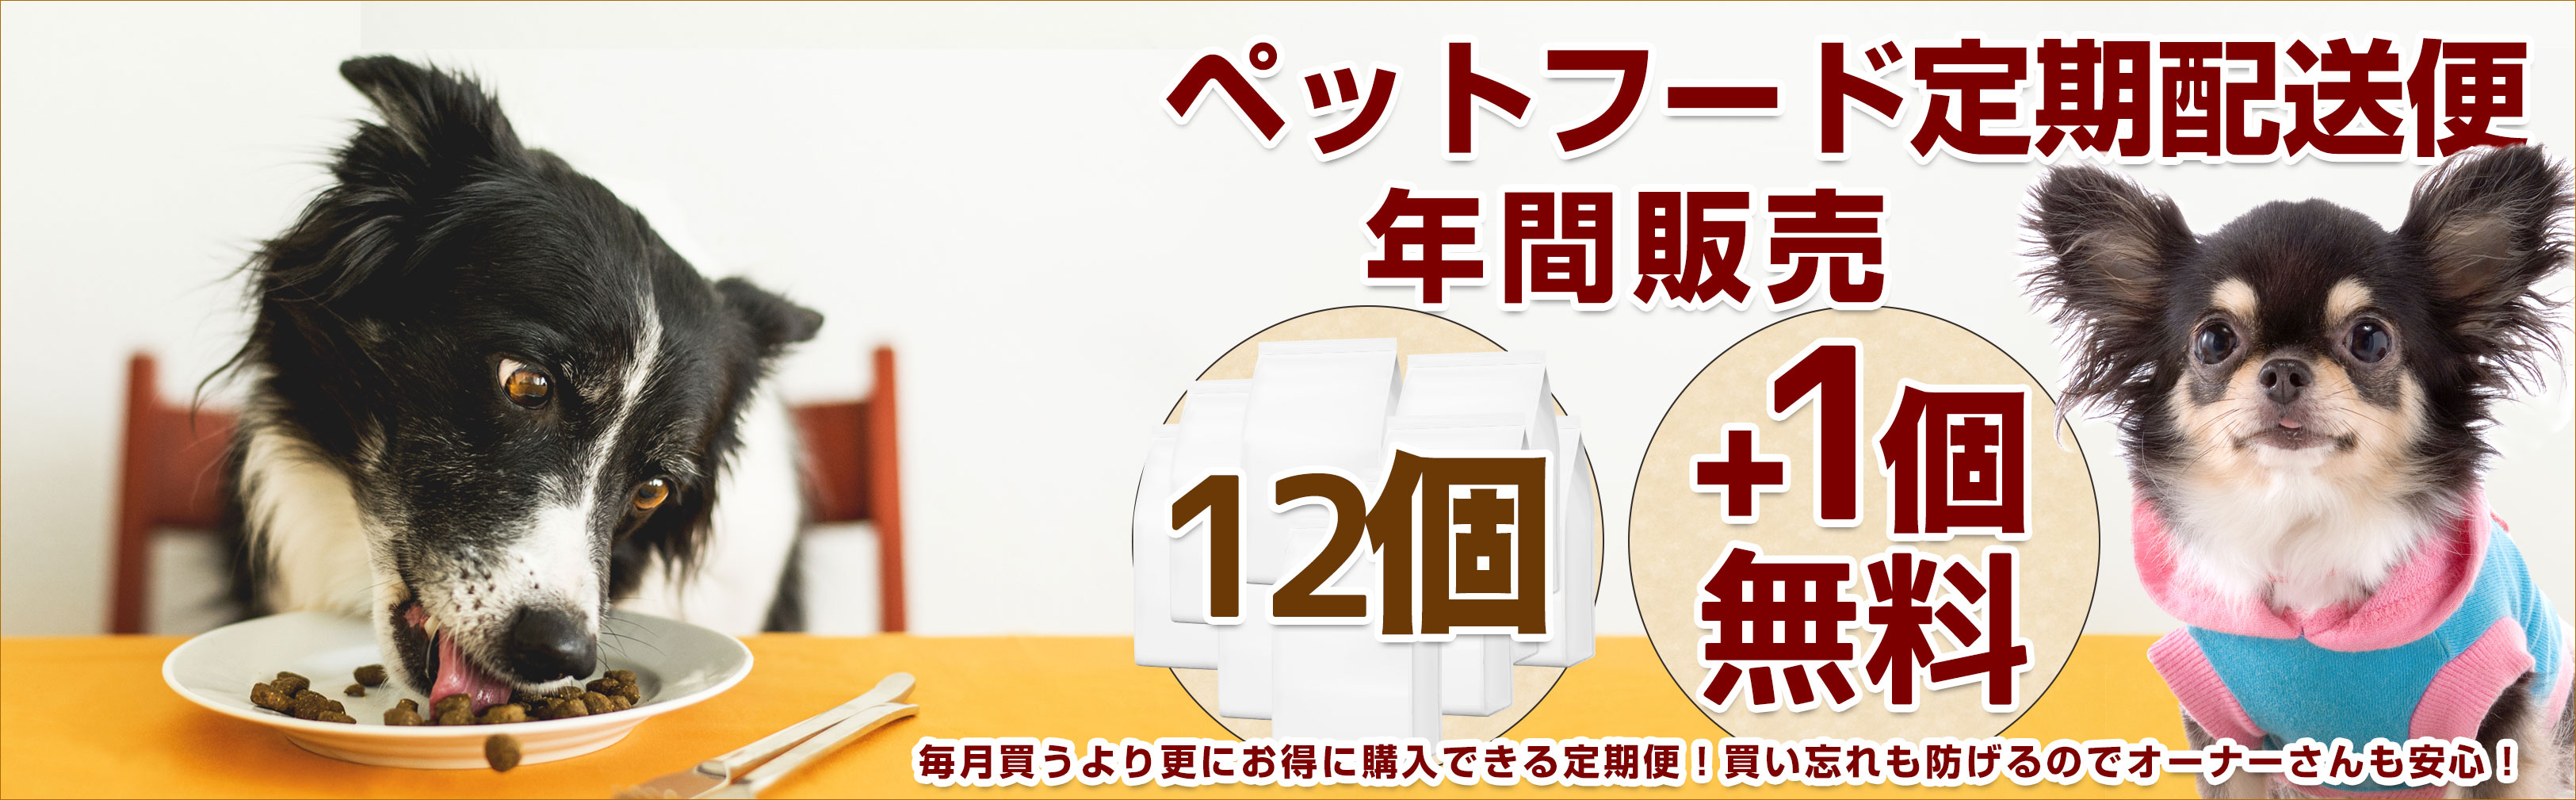 サンコー バードケージ 40 大阪に誕生、関西の大型ペットショップ PLUXE ピーアンドリュクス 通販サイト